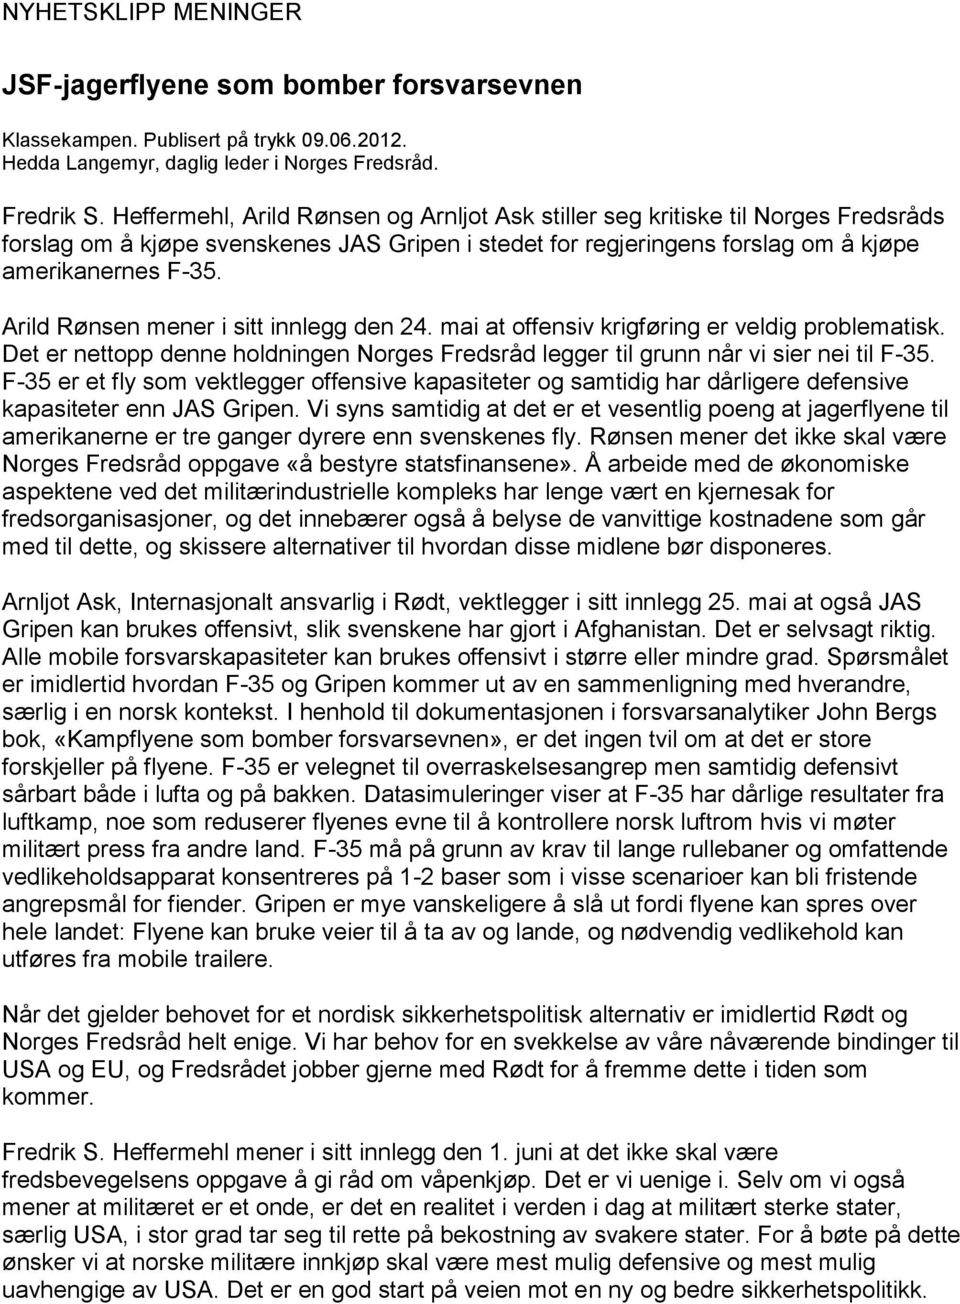 Arild Rønsen mener i sitt innlegg den 24. mai at offensiv krigføring er veldig problematisk. Det er nettopp denne holdningen Norges Fredsråd legger til grunn når vi sier nei til F-35.